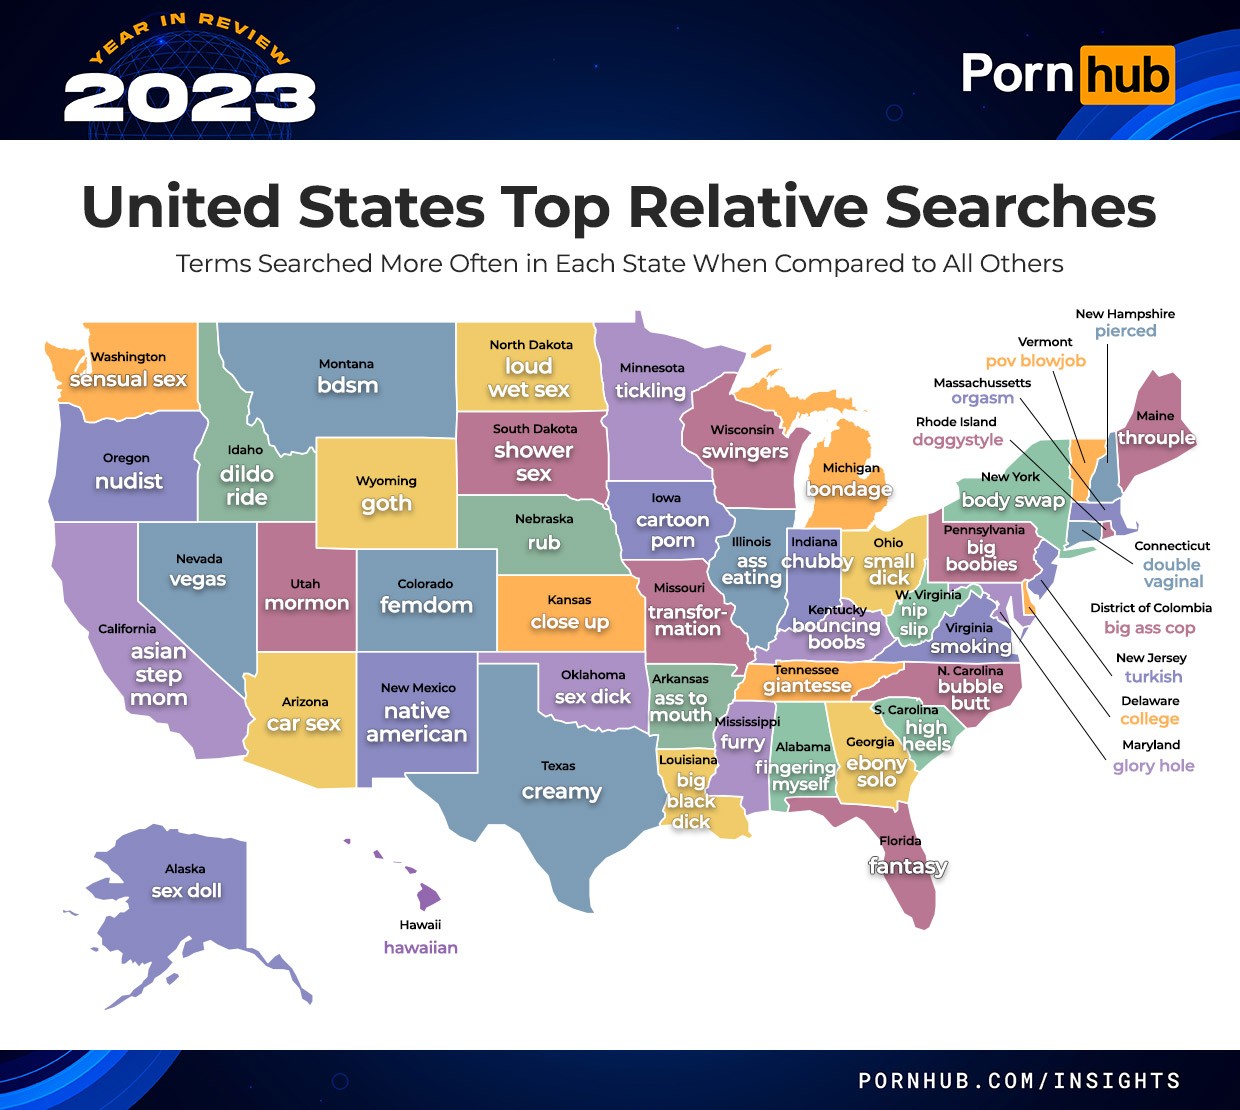 pornhub durchsucht die USA